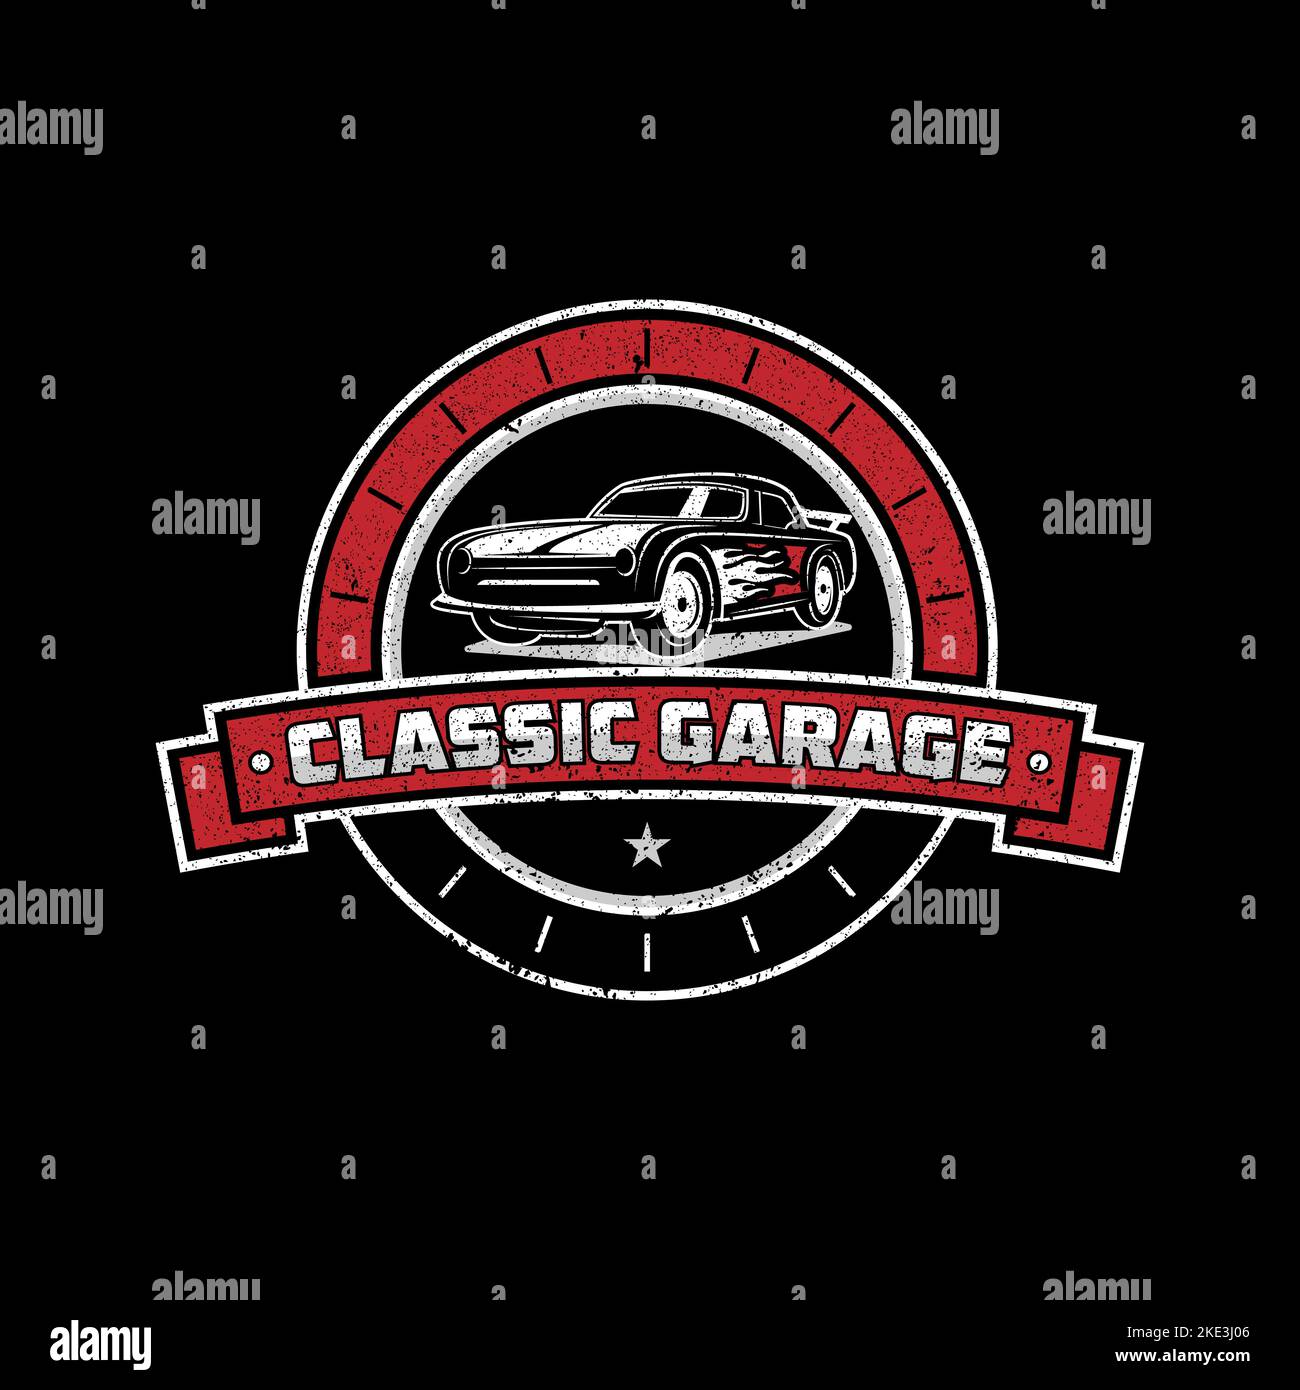 Classic Garage riparazione Logo vettore, automotive modifica modello logo con stile rustico, vintage, retrò Illustrazione Vettoriale